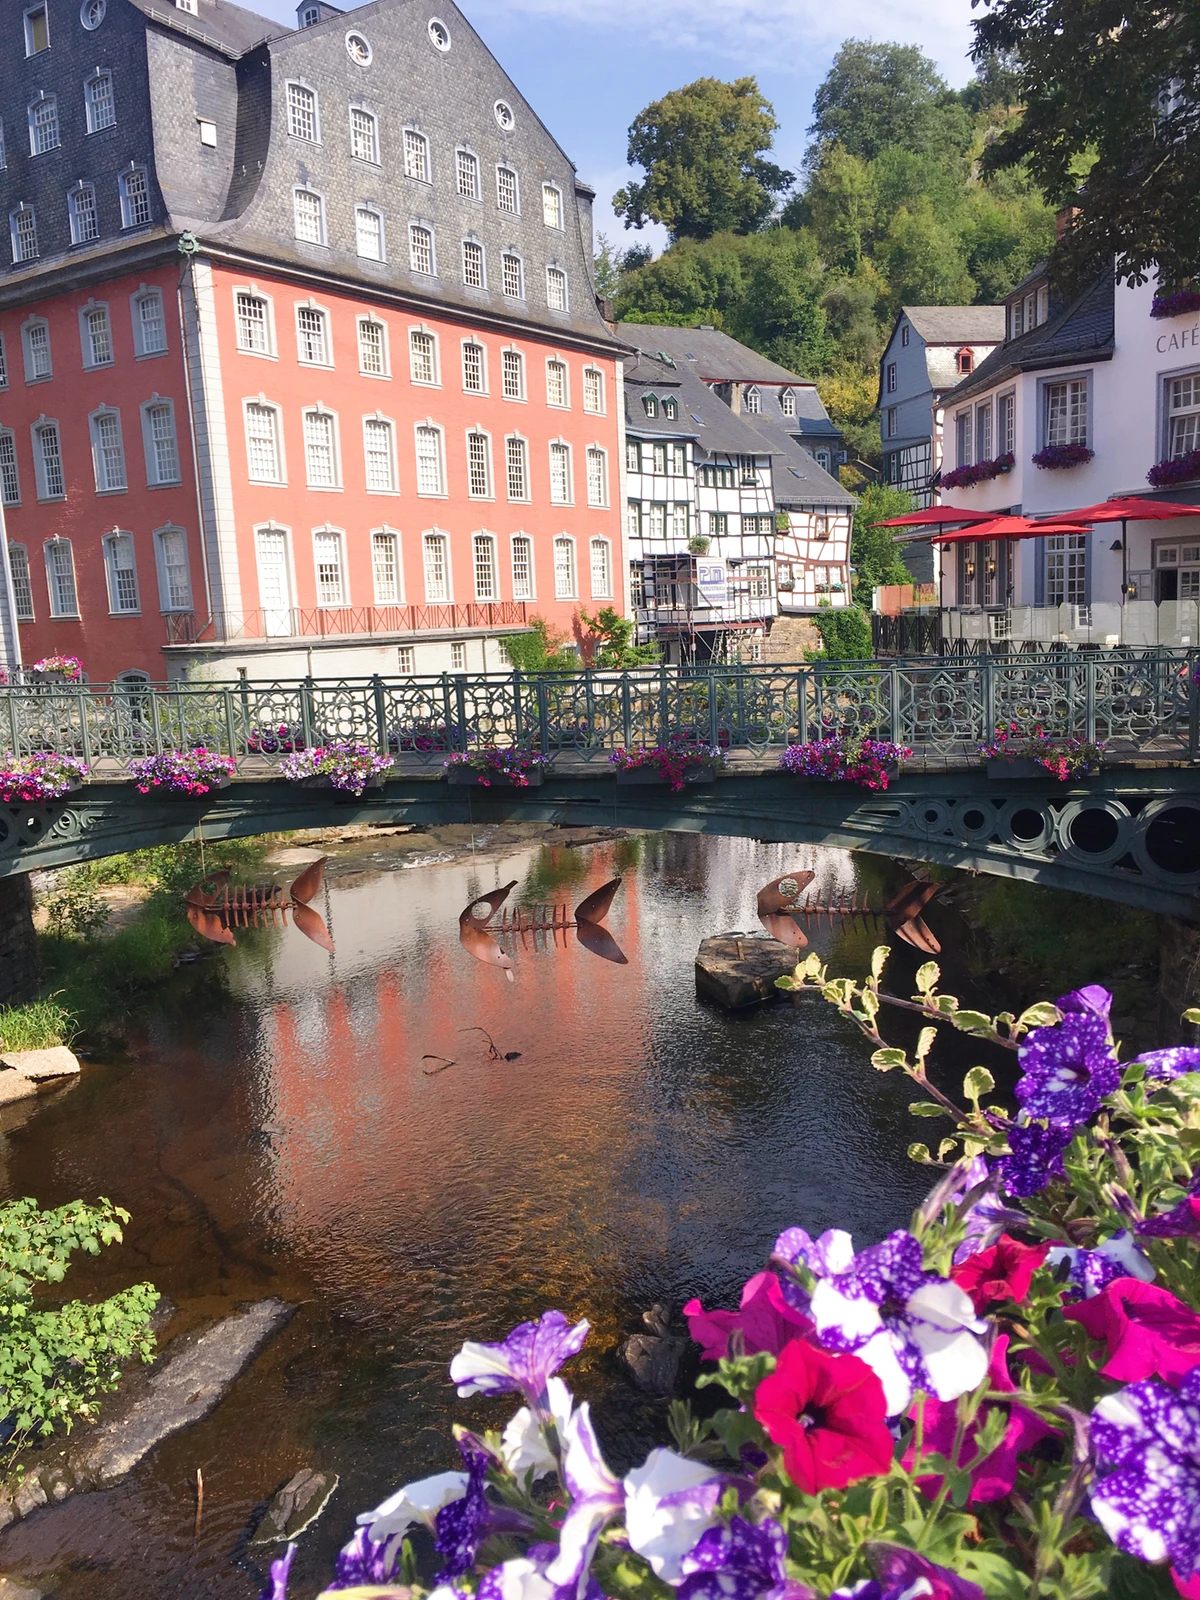 ドイツの小さな可愛い街 Kasumi713が投稿したフォトブック Lemon8